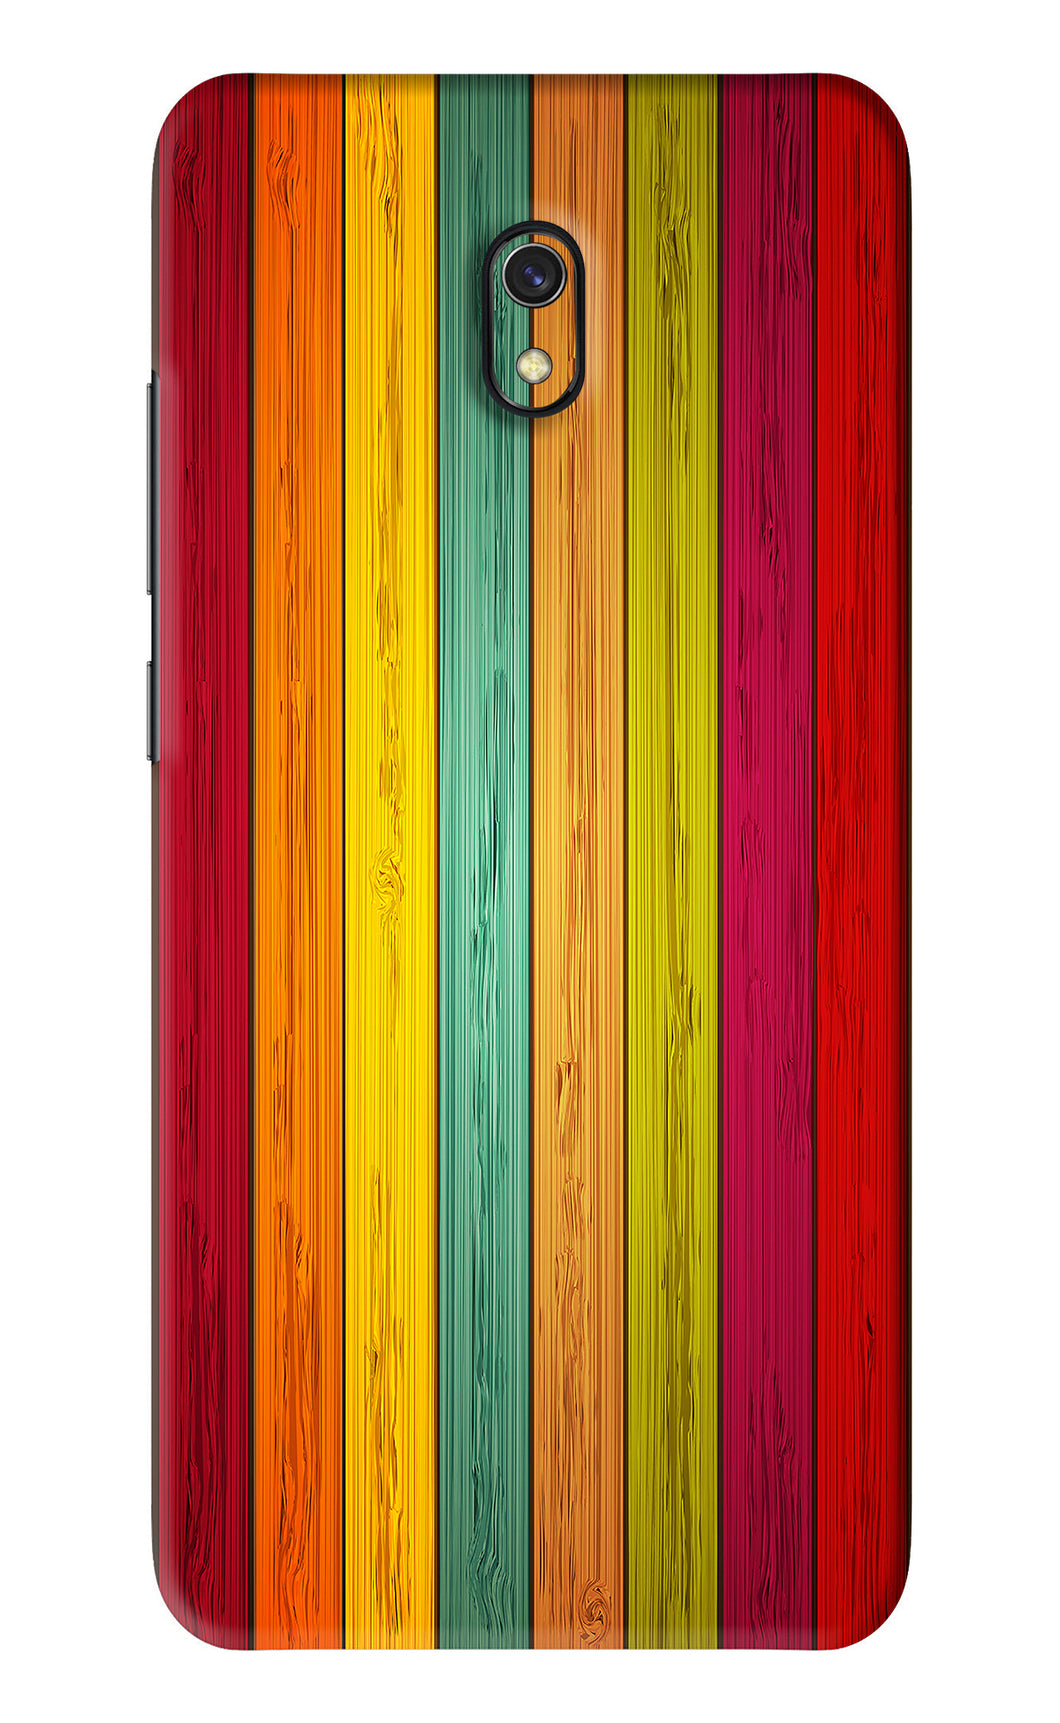 Multicolor Wooden Xiaomi Redmi 8A Back Skin Wrap